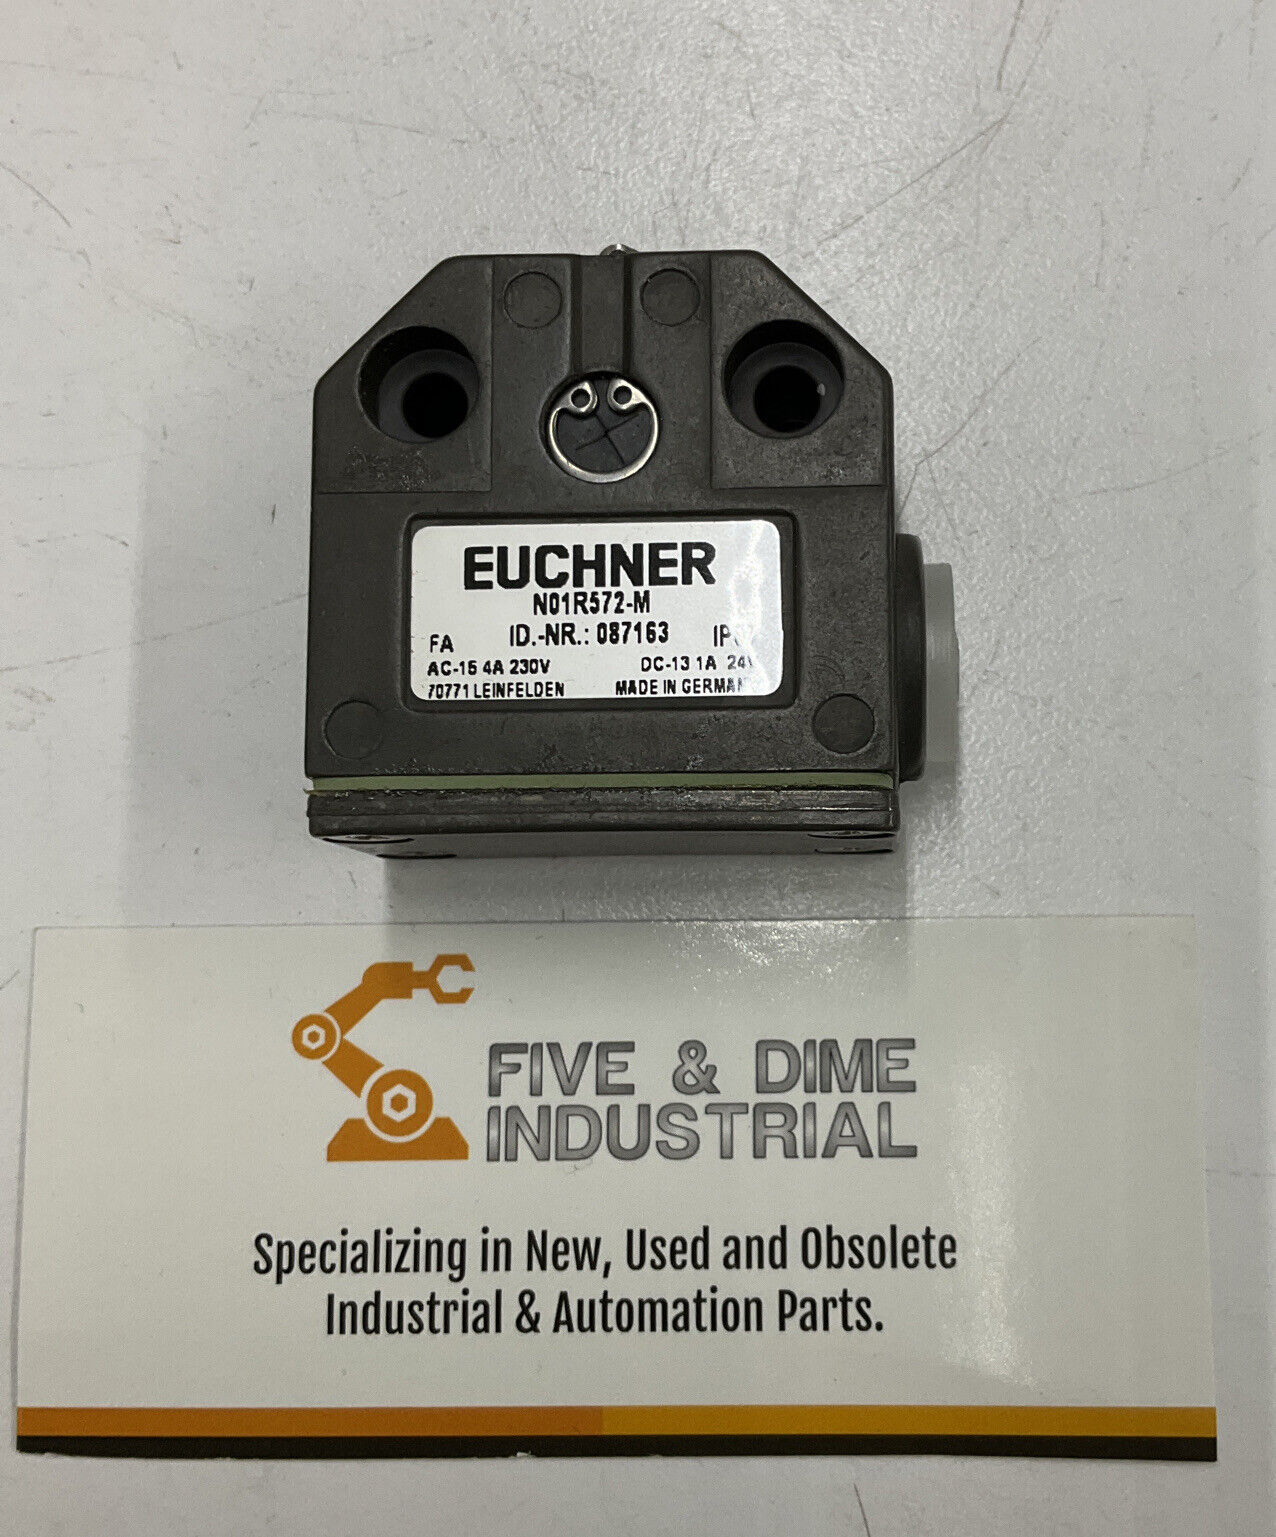 Euchner N01R572-M New Limit switch 087163  (RE131)